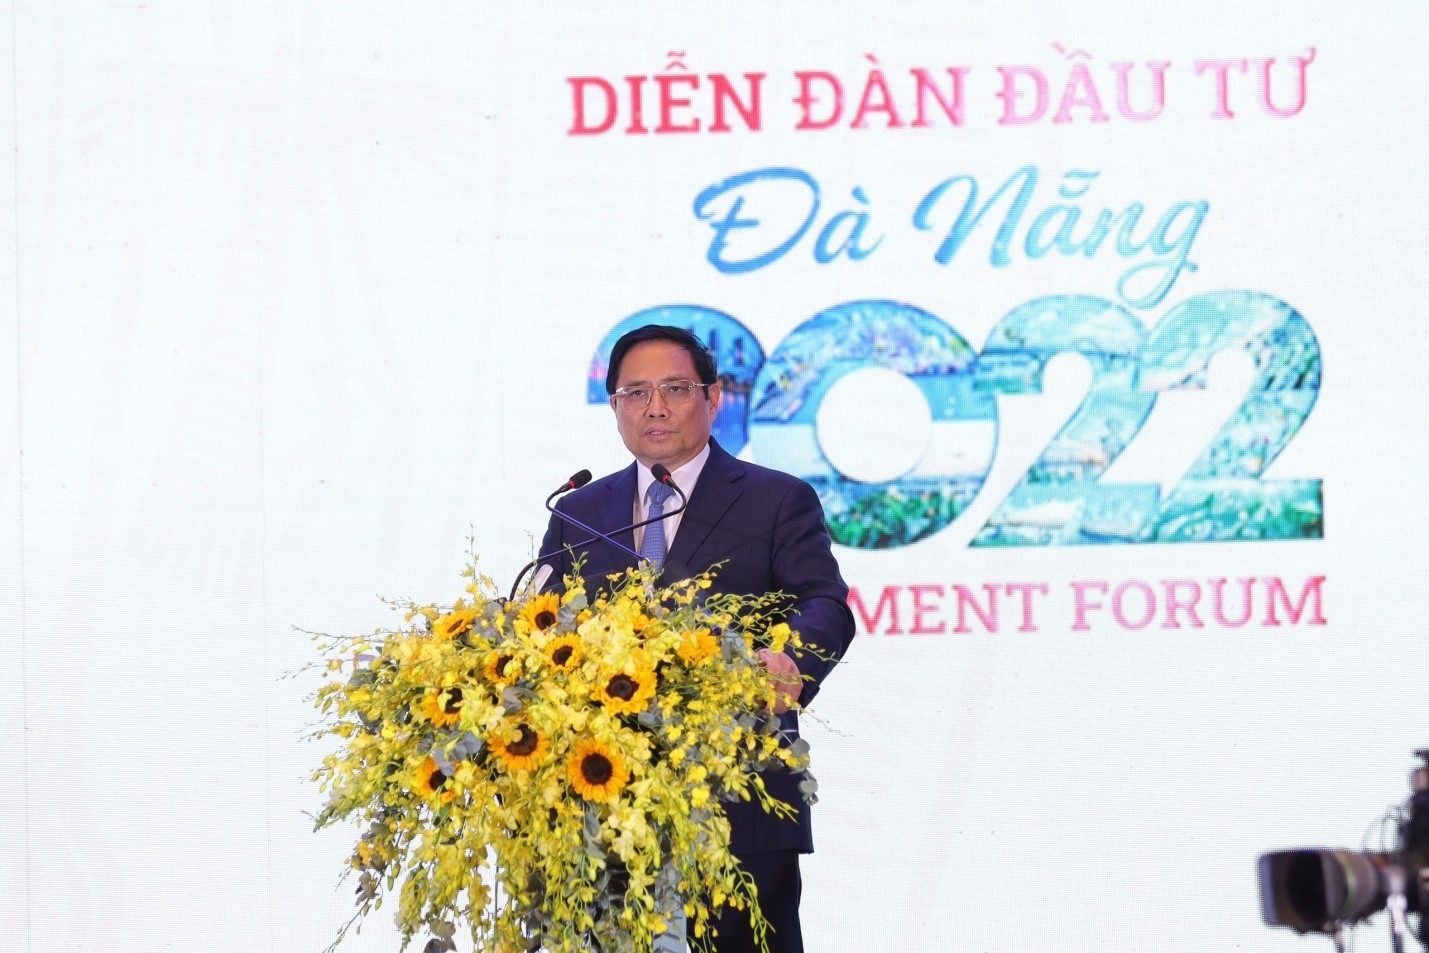 Diễn đàn đầu tư Đà Nẵng 2022: thành phố Đà Nẵng với “tâm và thế” sẵn sàng đón các làn sóng chuyển dịch đầu tư mới.